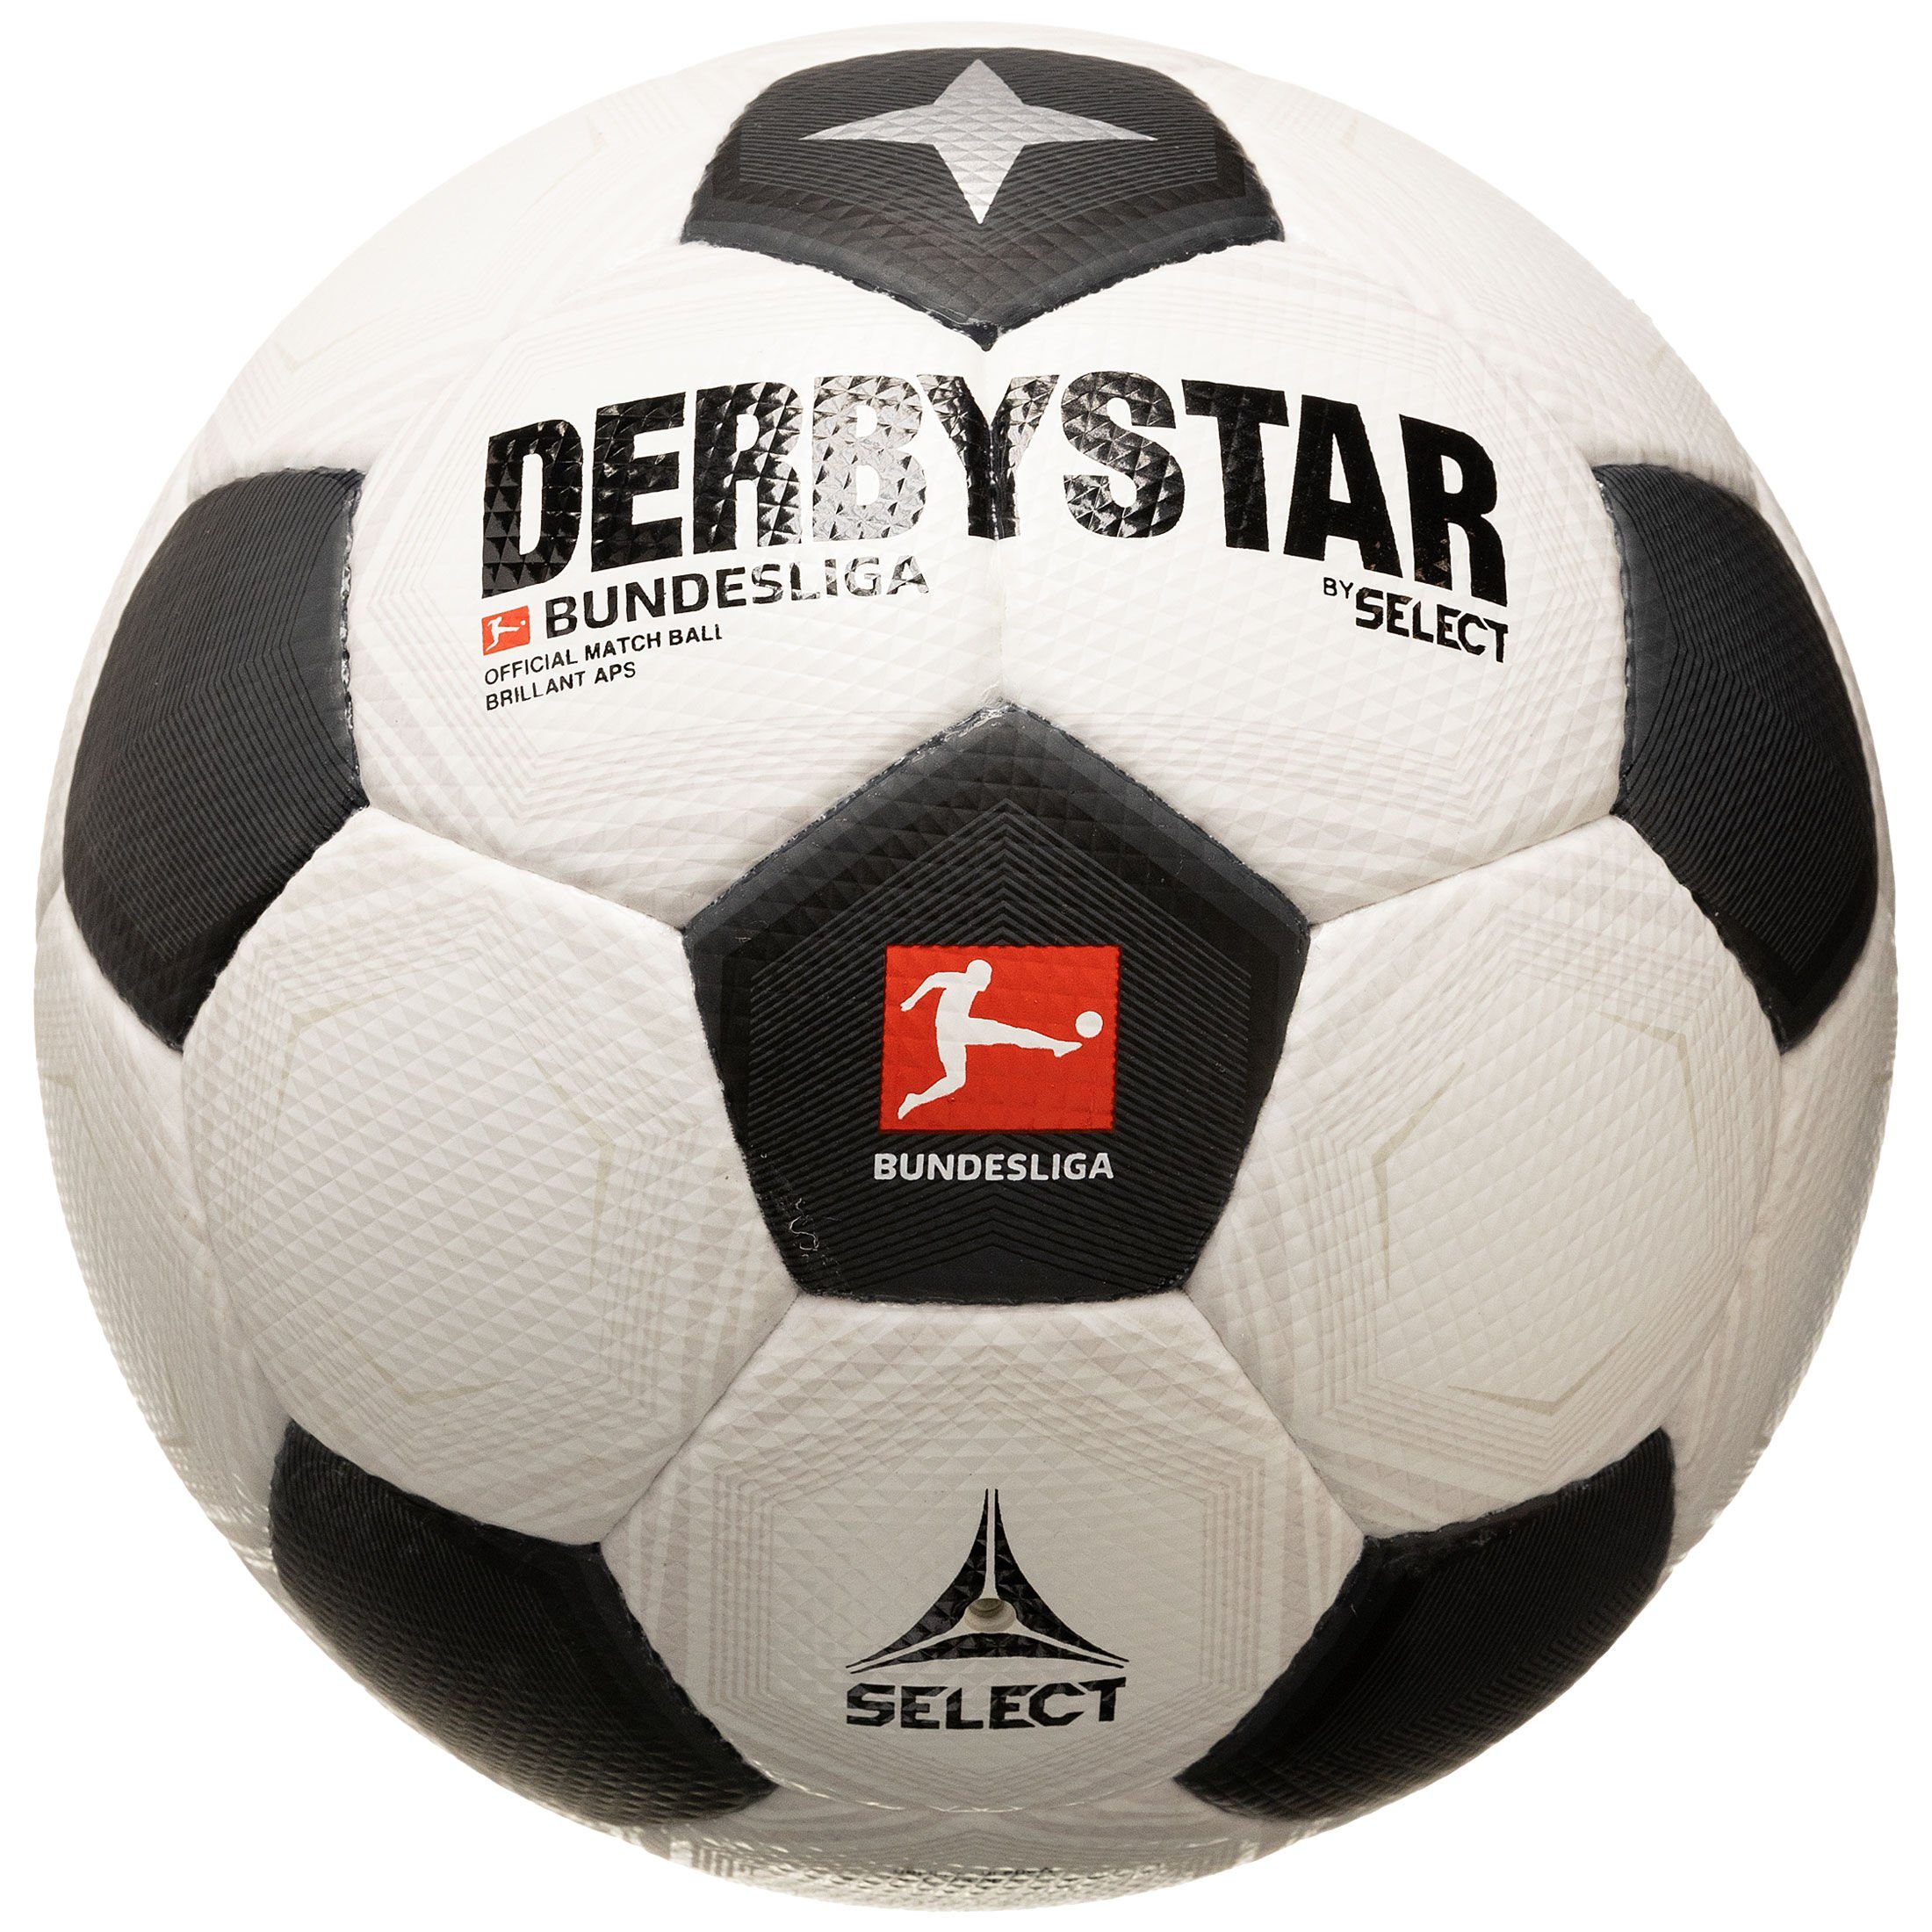 Derbystar Fußball Bundesliga Brillant APS CLASSIC v23 Fußball